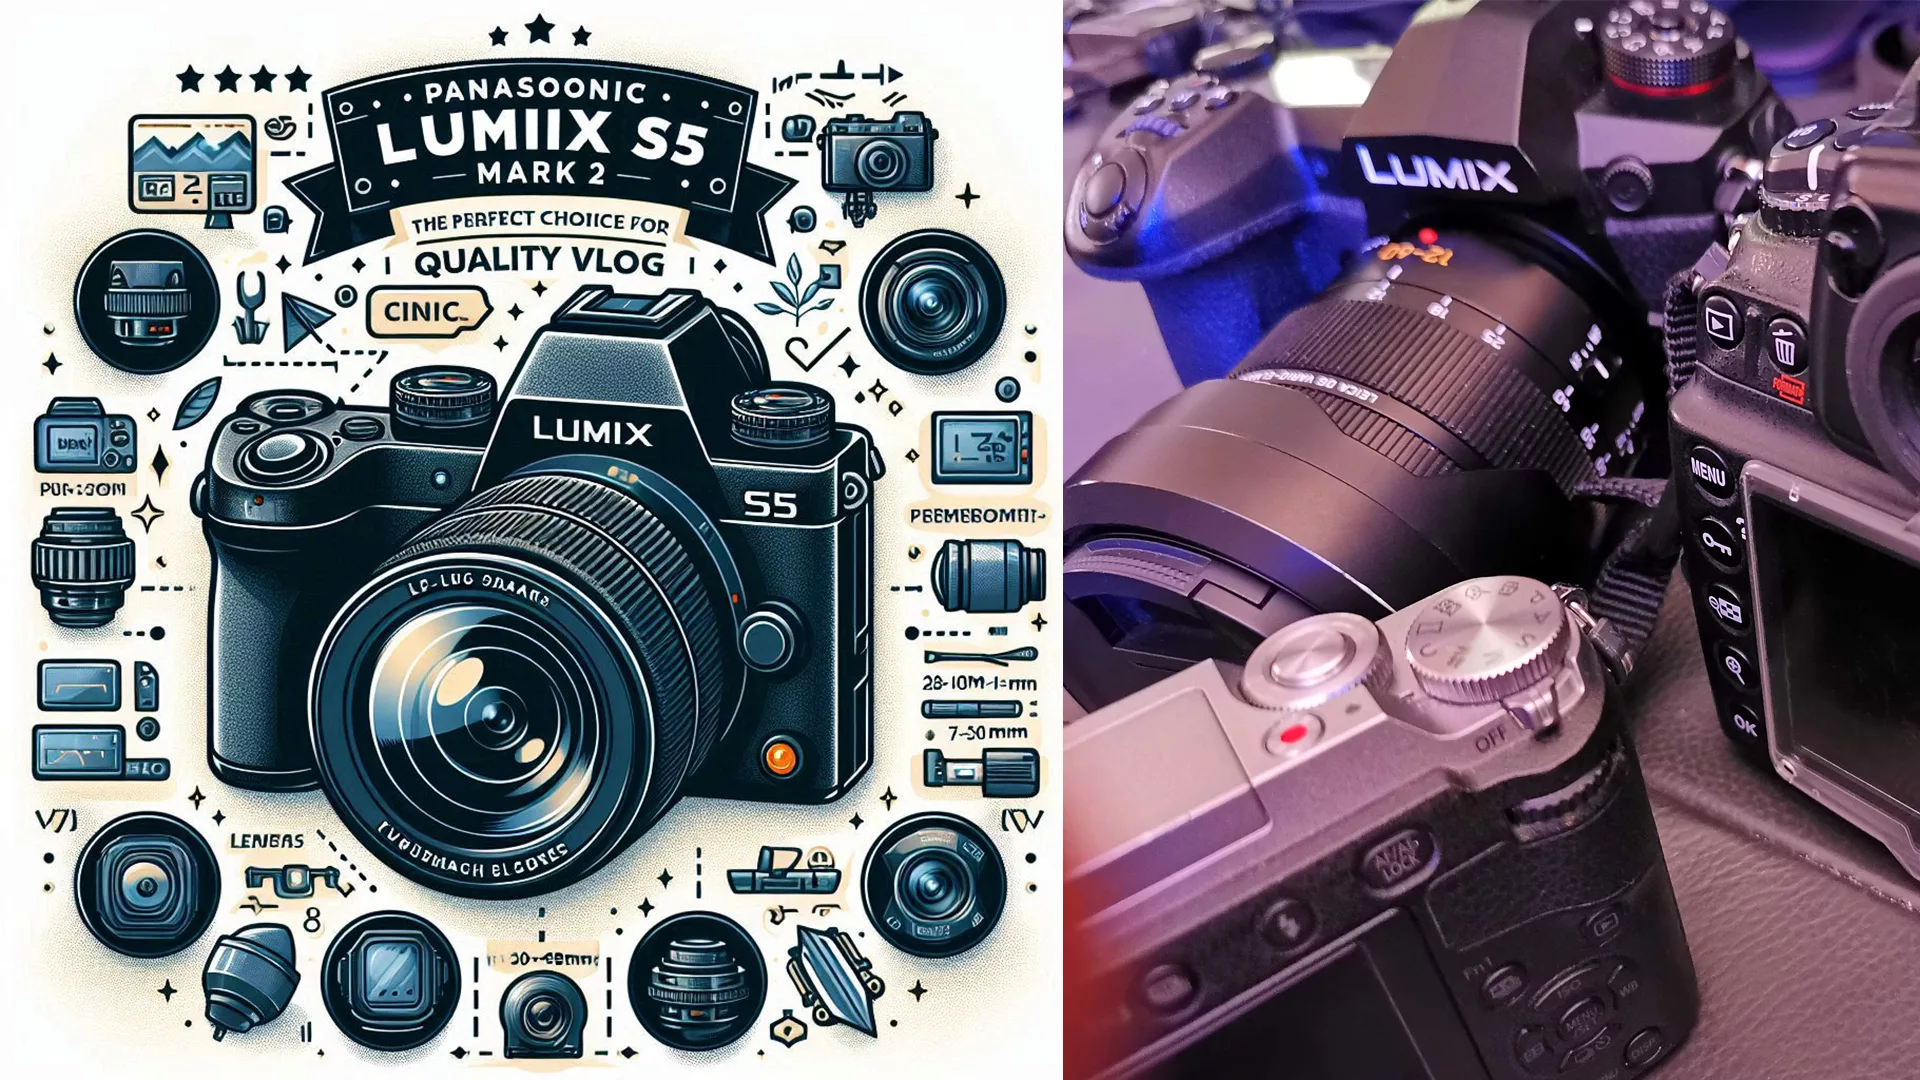 Panasonic Lumix S5 Mark 2 : Le Choix Parfait pour un Vlog de Qualité